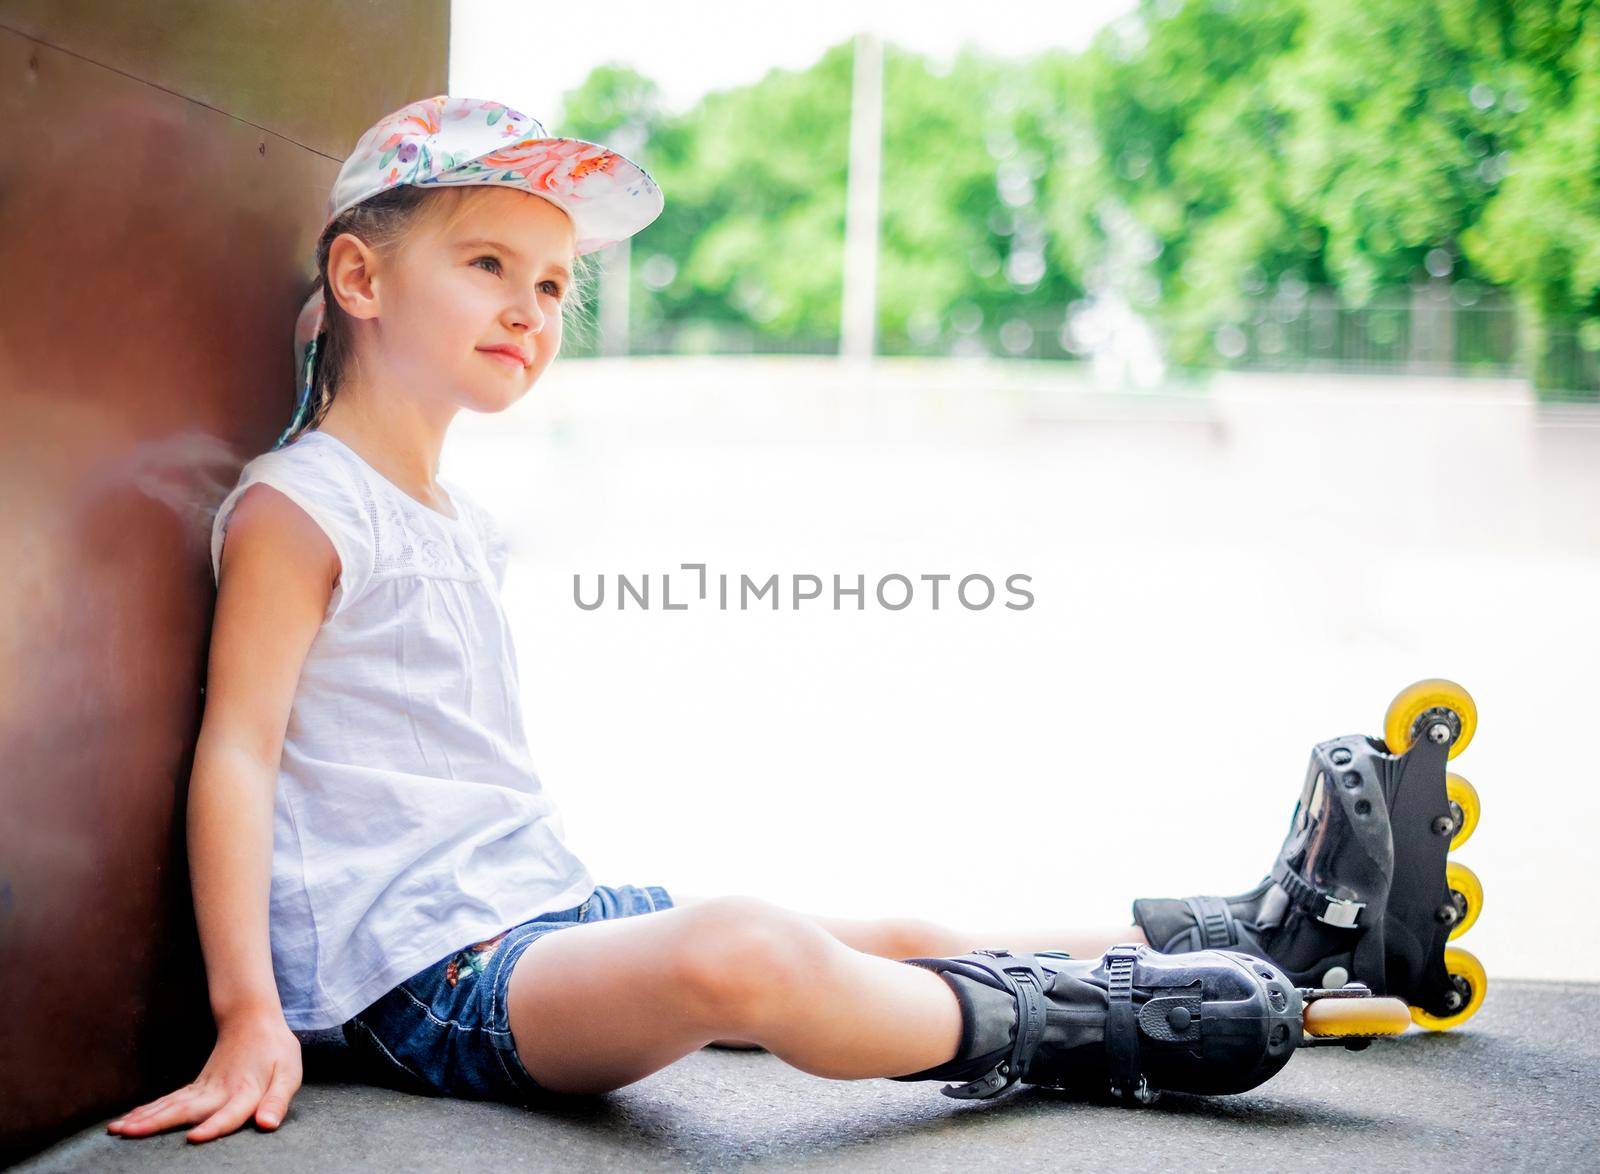 Beautiful little girl on roller skates in park